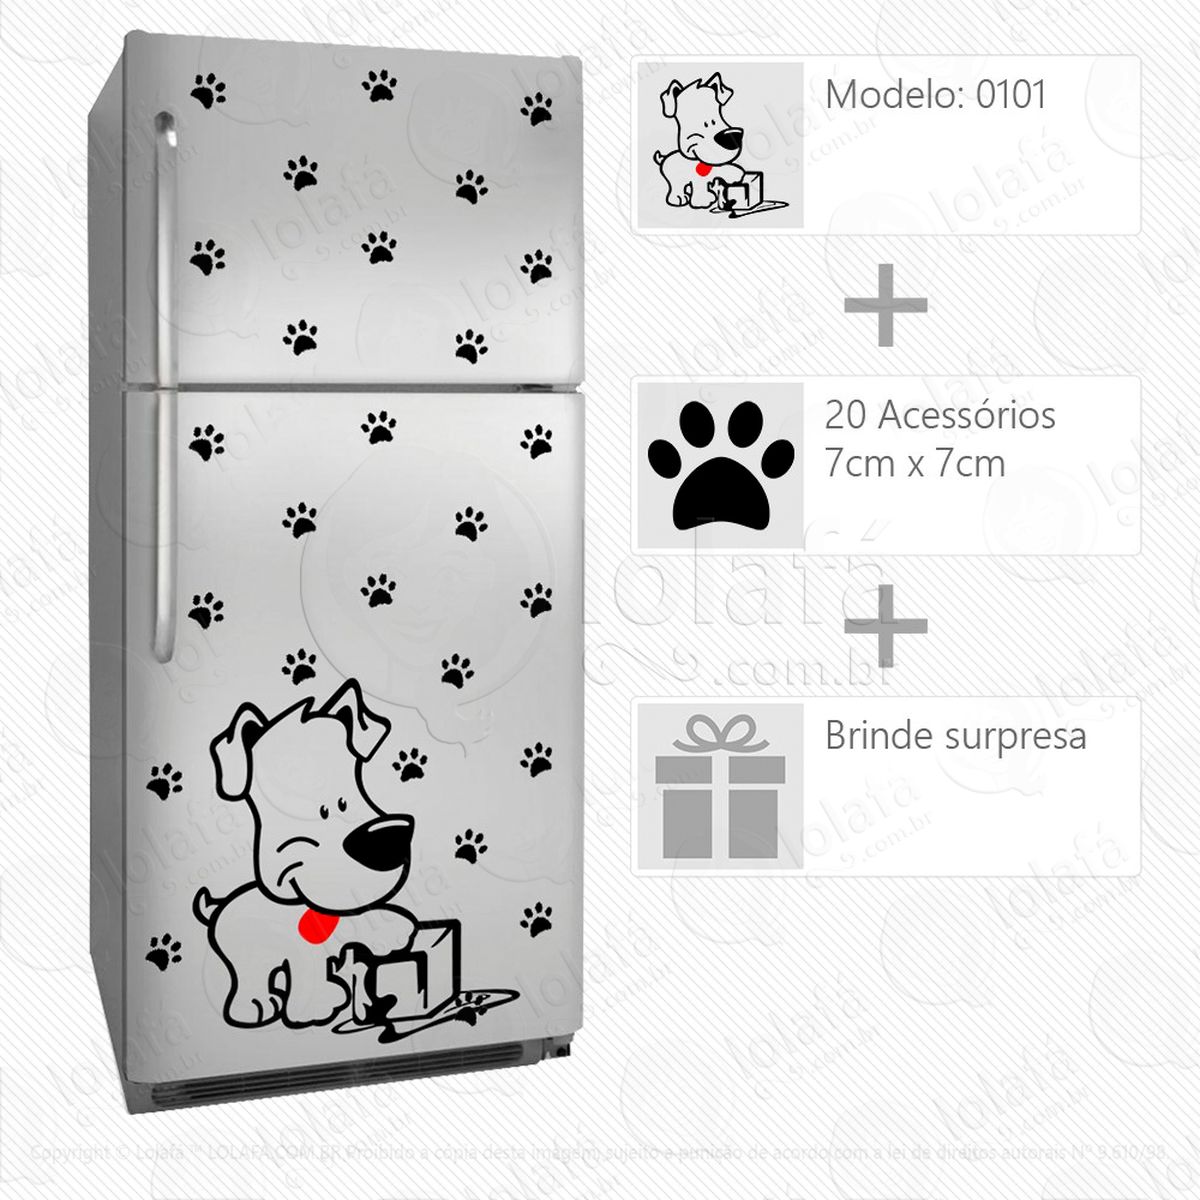 cachorro adesivo para geladeira e frigobar - mod:101